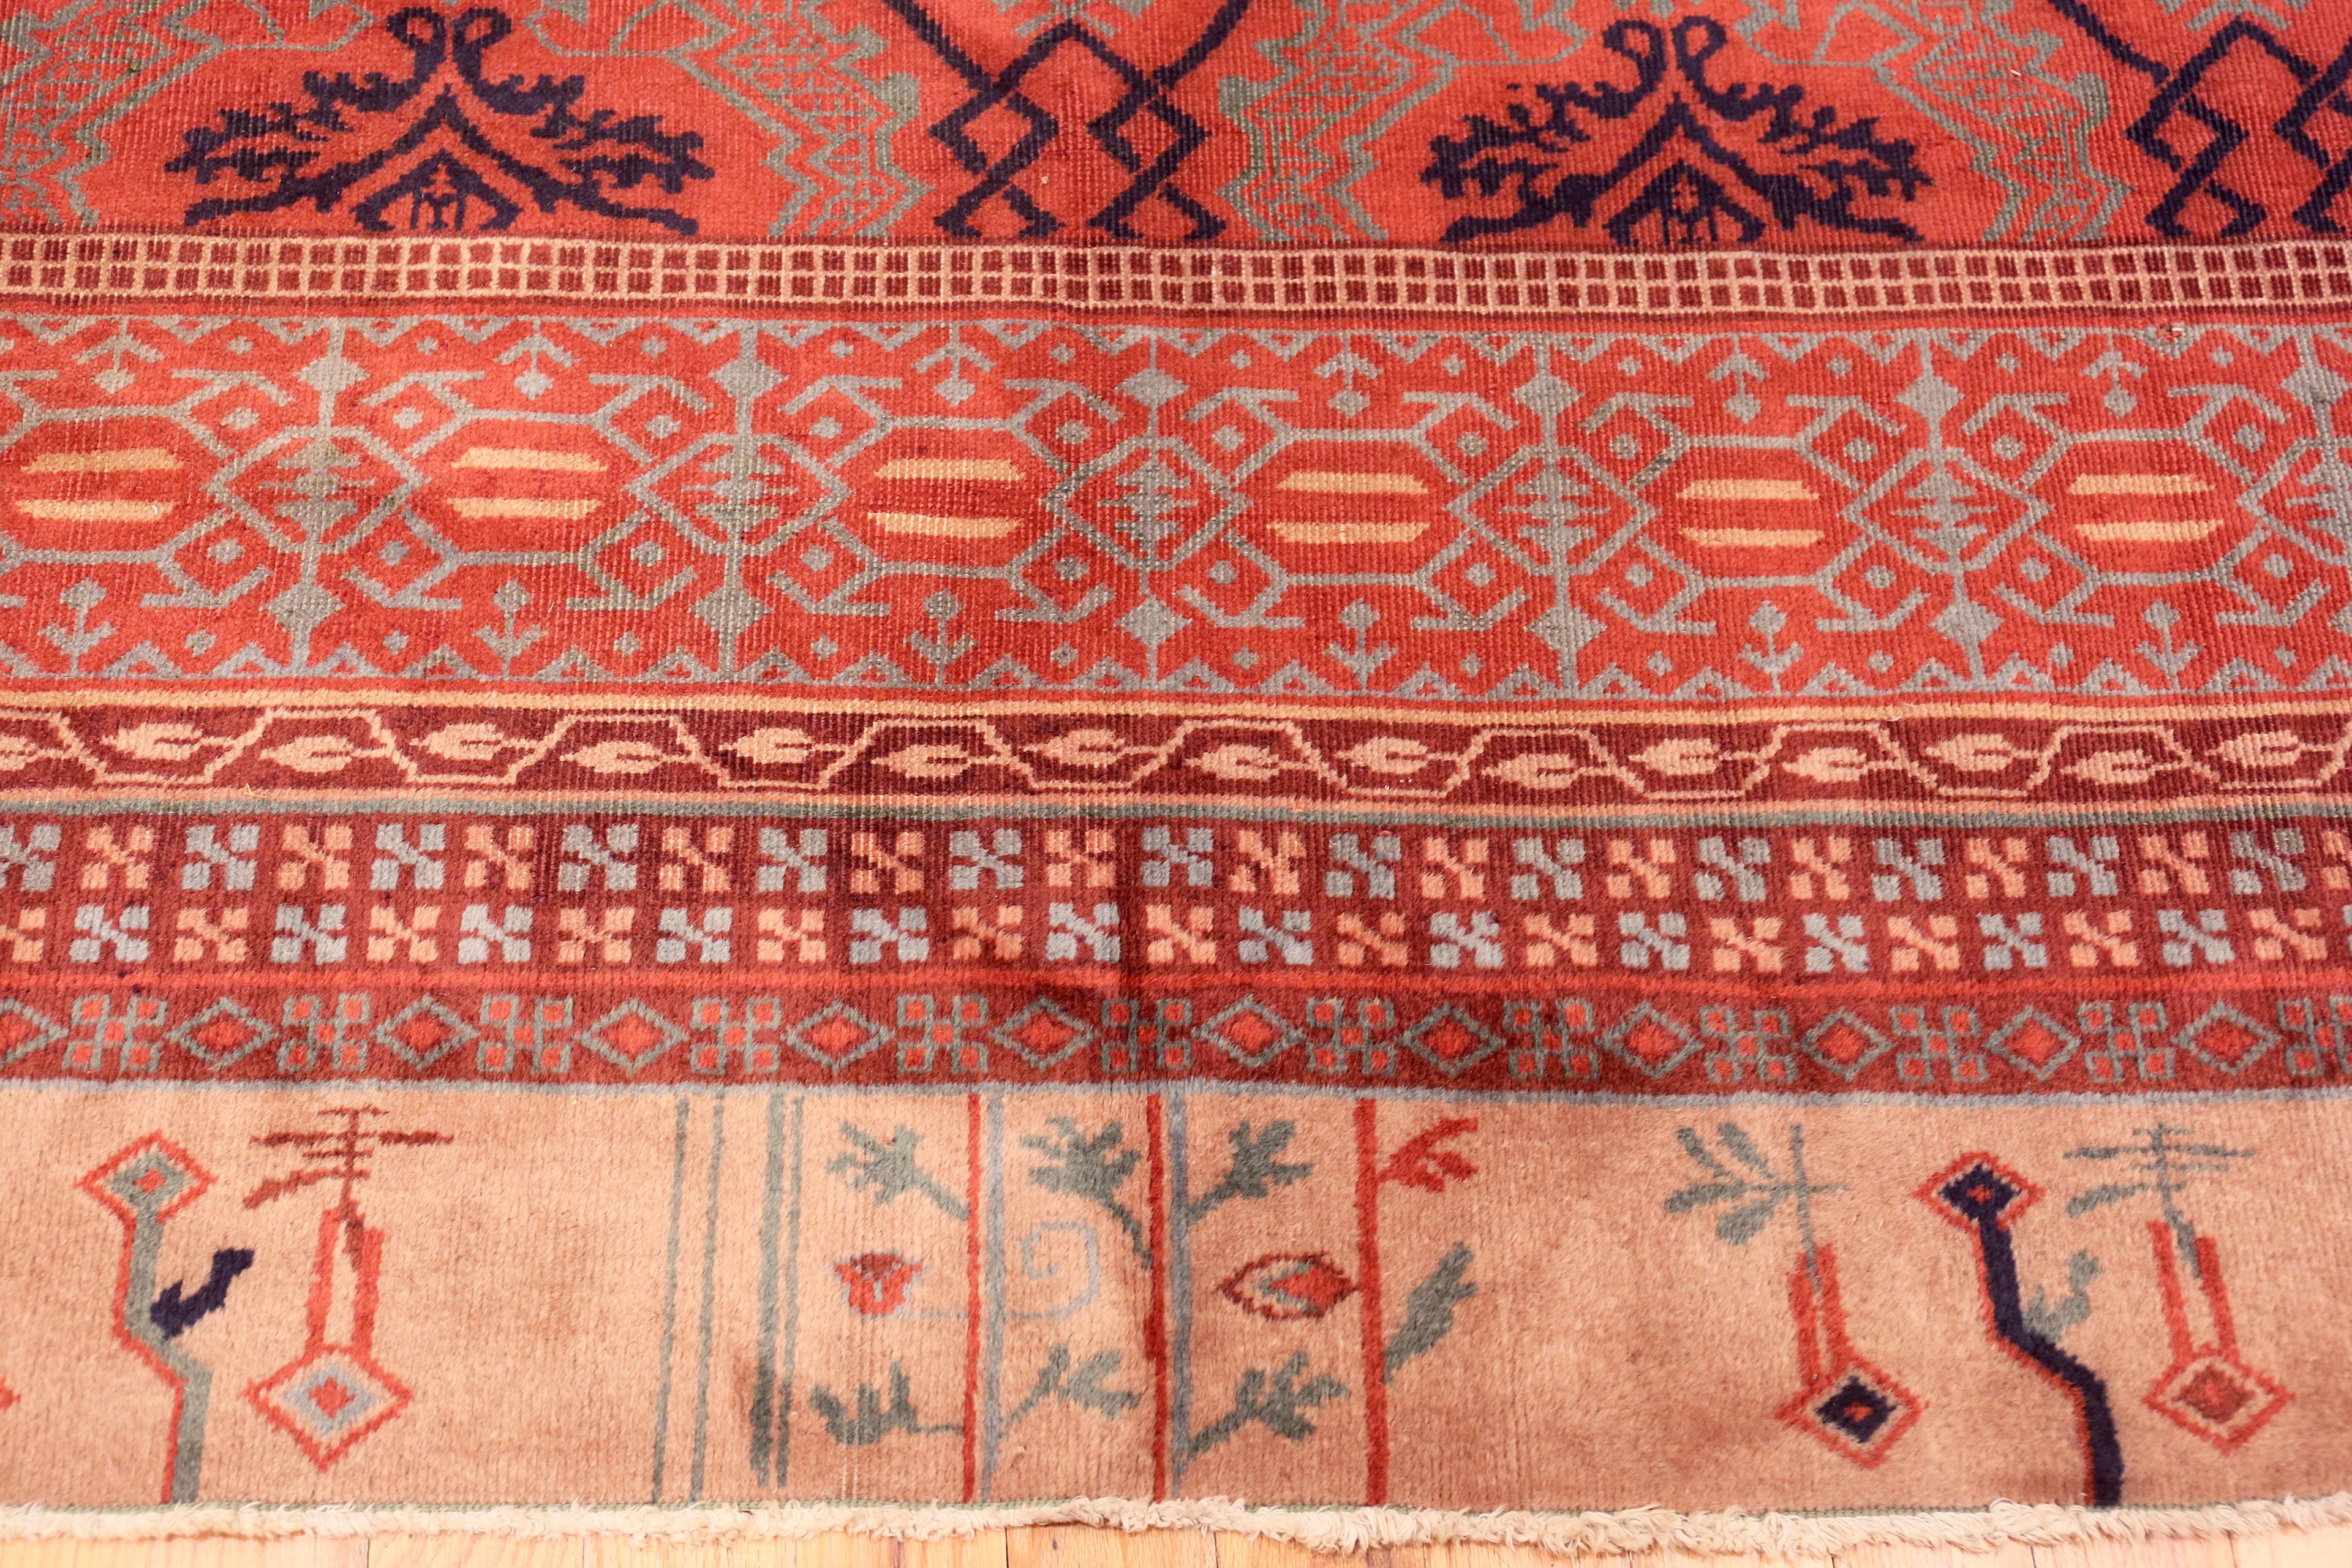 Un magnifique tapis turc ancien de Smyrne, pays d'origine/type de tapis : tapis turcs anciens, circa date : 1920. Taille : 10 ft 5 in x 13 ft 9 in (3,17 m x 4,19 m)


